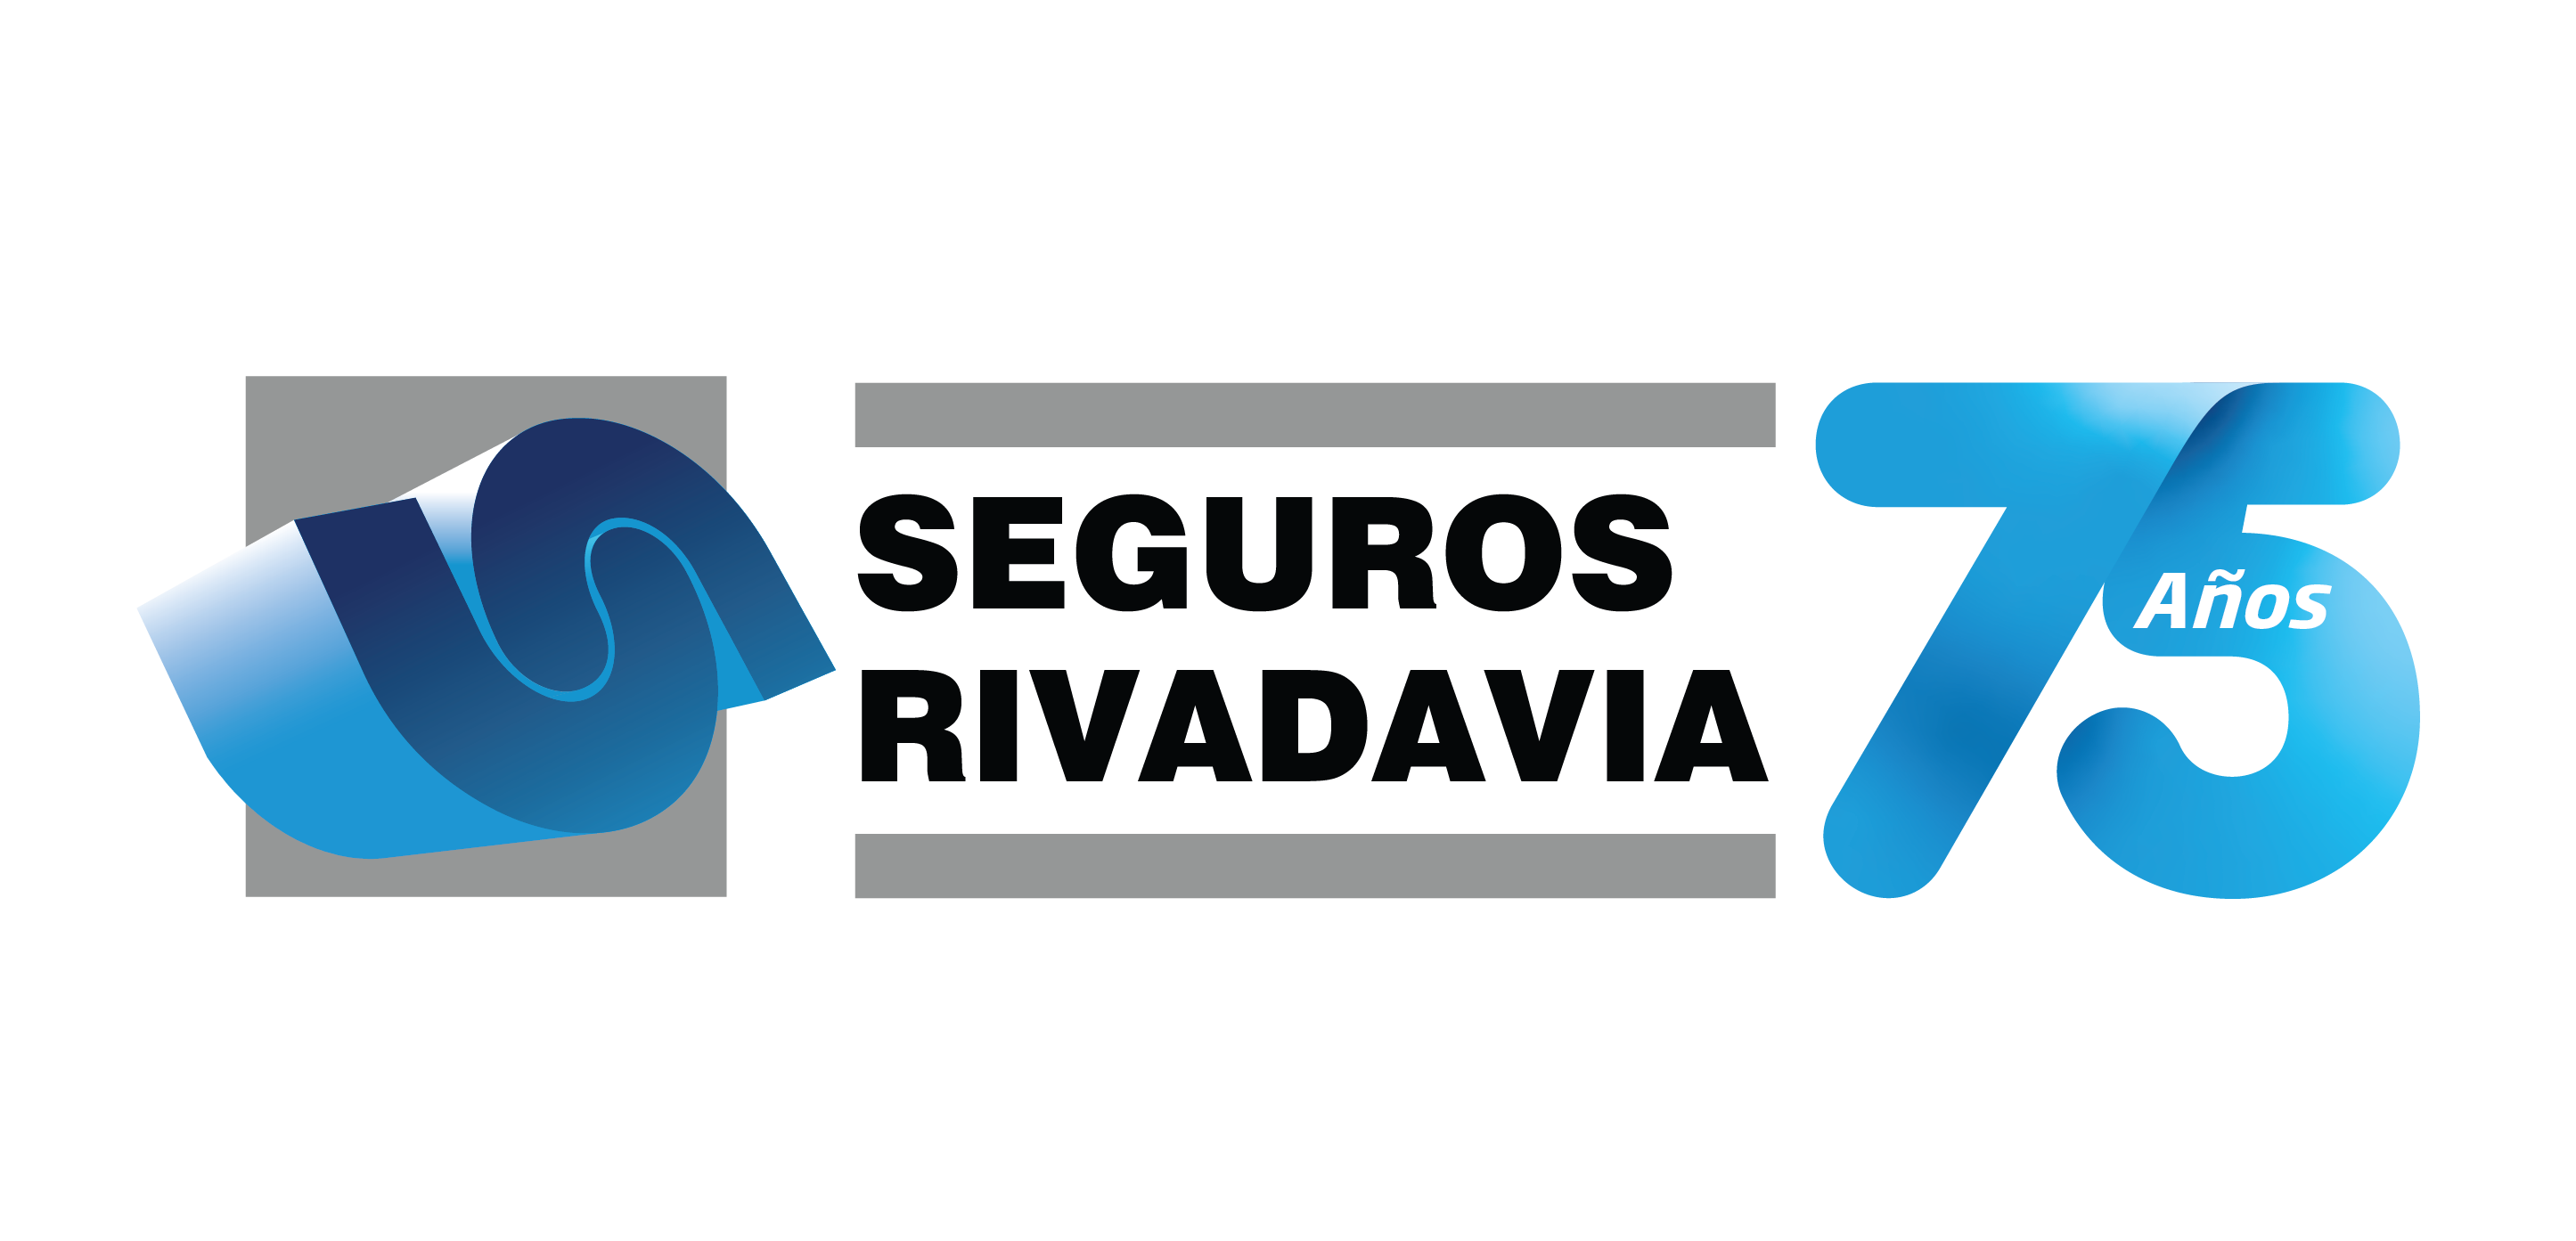 En un hito fundamental para la historia de la empresa, Seguros Rivadavia celebra sus
primeros 75 años. Trayectoria, liderazgo, cumplimiento, solvencia e innovación fueron
marcando el paso de estas décadas.